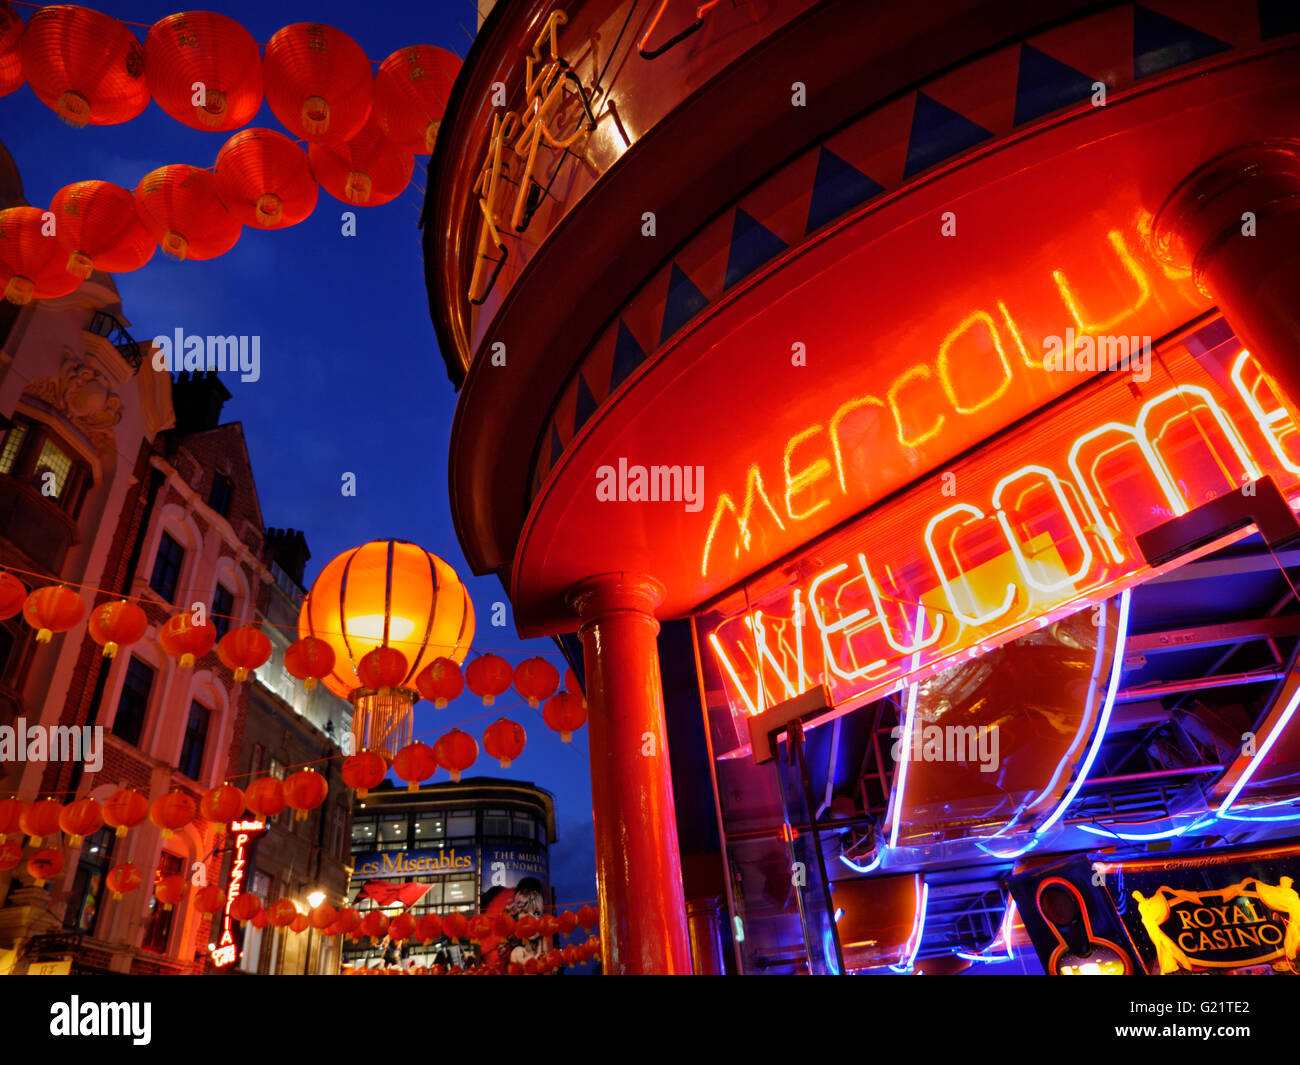 Bienvenue CHINATOWN SOHO LONDRES NUIT lampions éclairés sur une longue nuit dans Wardour Street avec néon signe 'Bienvenue' Soho Chinatown London UK Banque D'Images